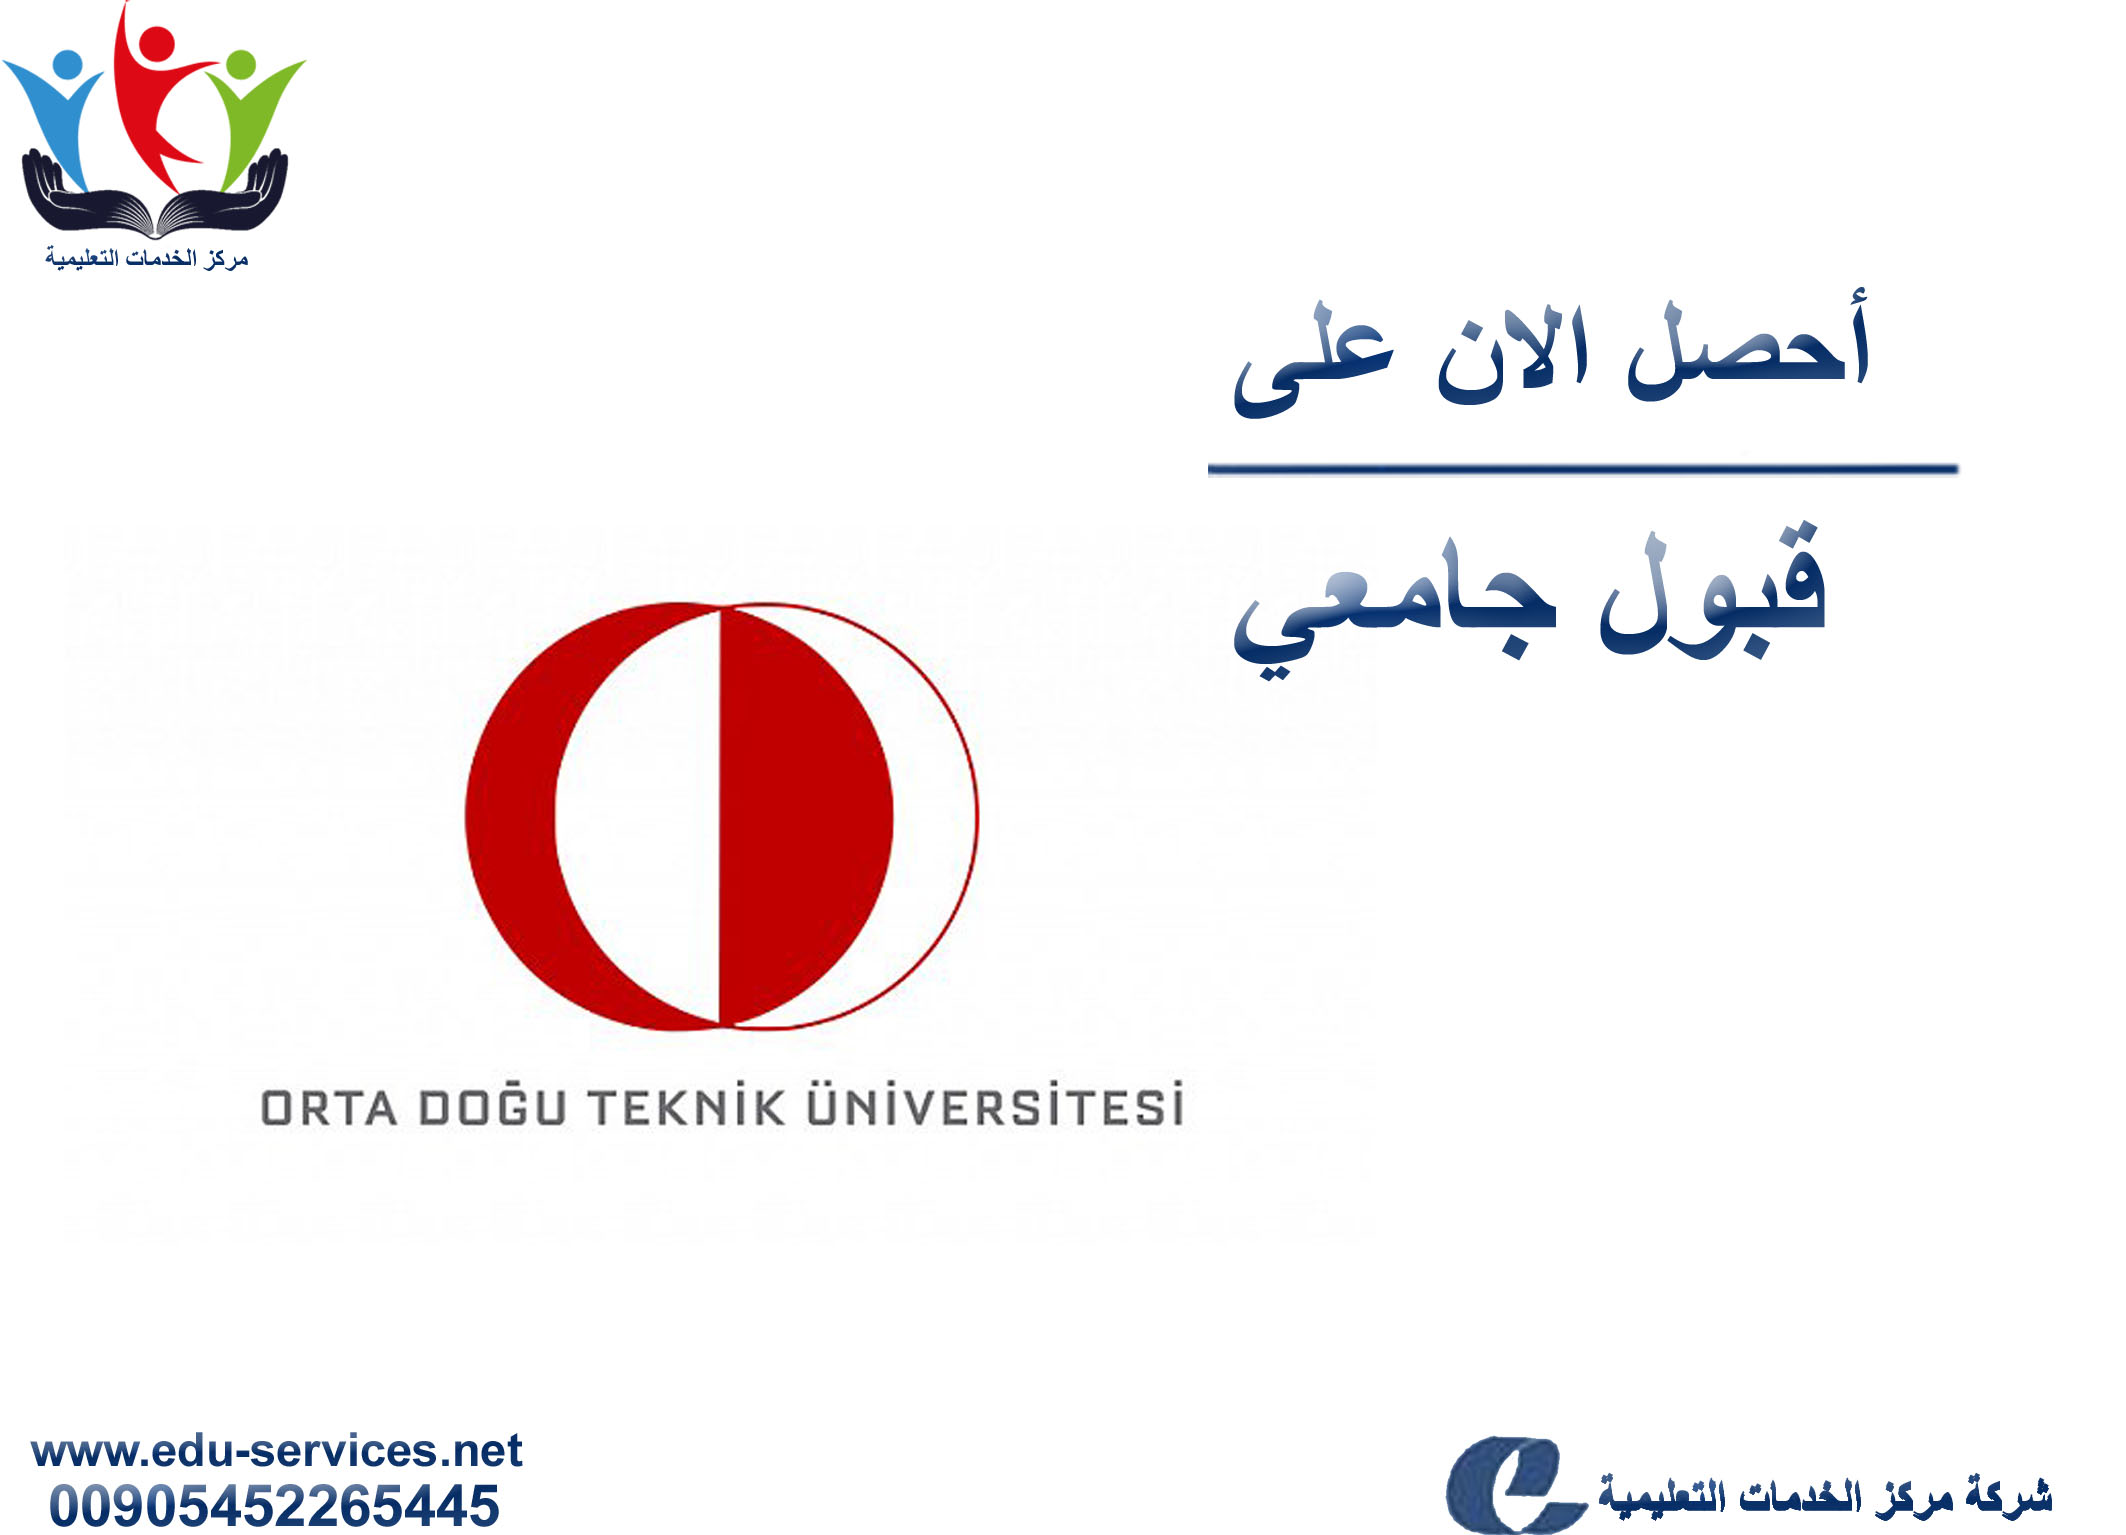 افتتاح التسجيل في جامعة الشرق الأوسط التقنية للعام 2018-2019